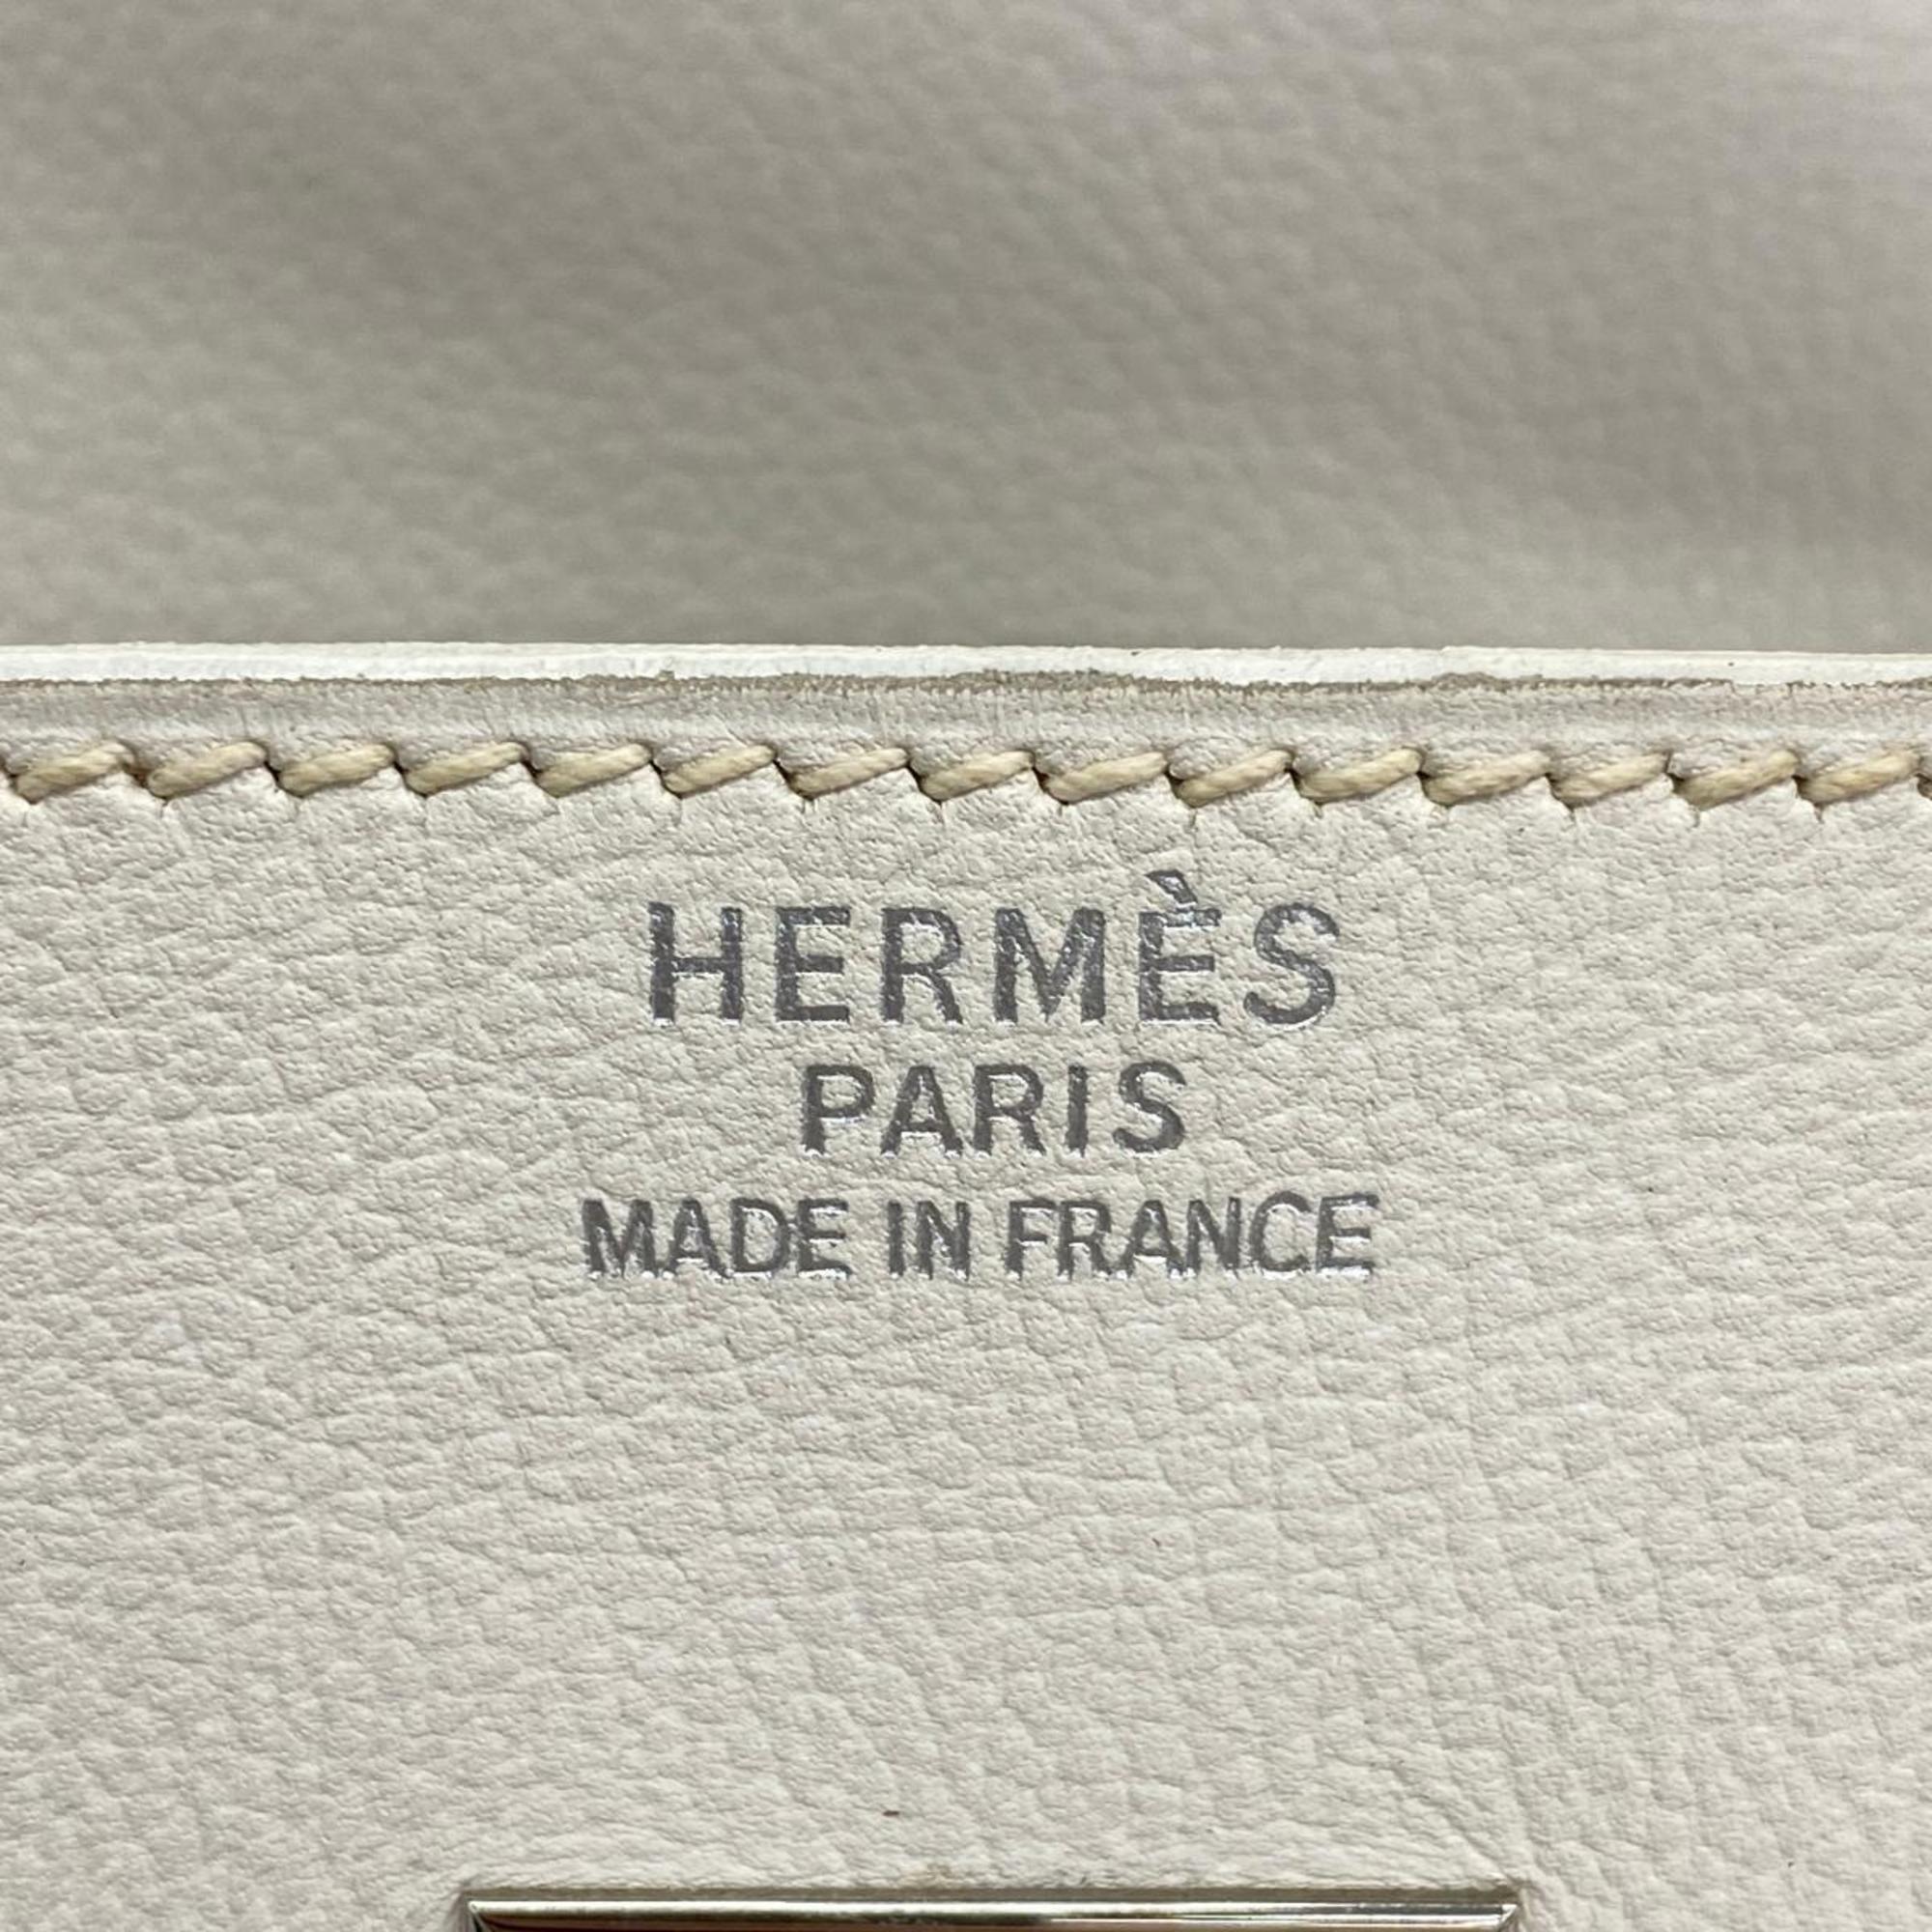 Hermes handbag Birkin 35 □D stamp Veau Gulliver White Ladies